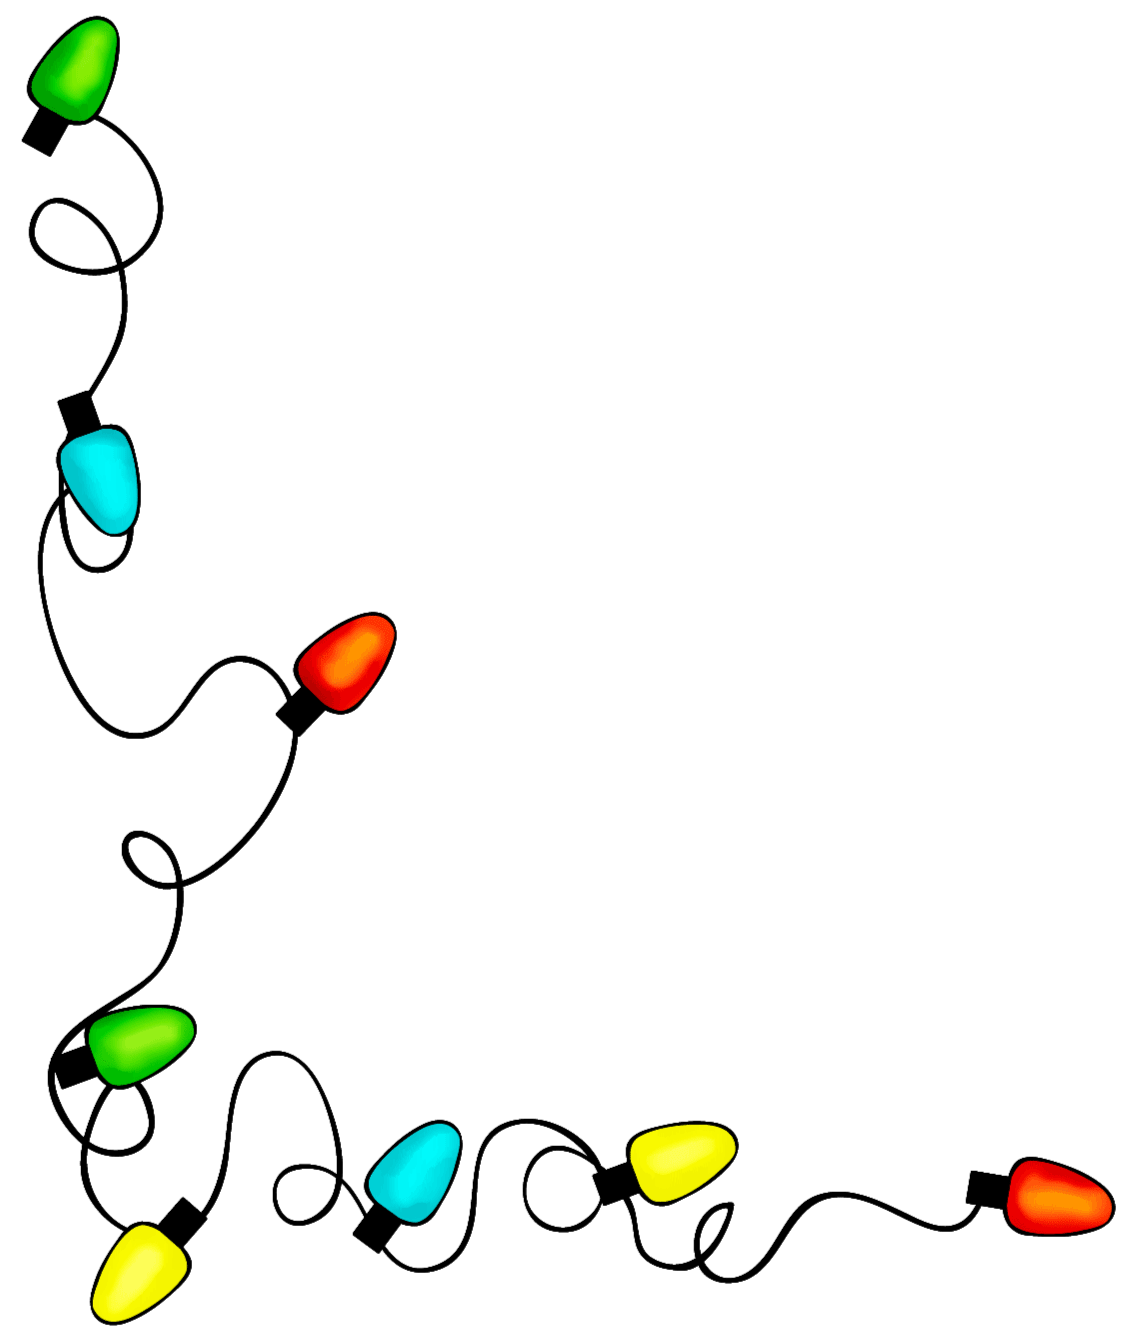 Party Gif,Christmas Lights Gif,Festival Gif,Festive Gif,Lighting Gif,Ornament Gif,String Light Gif